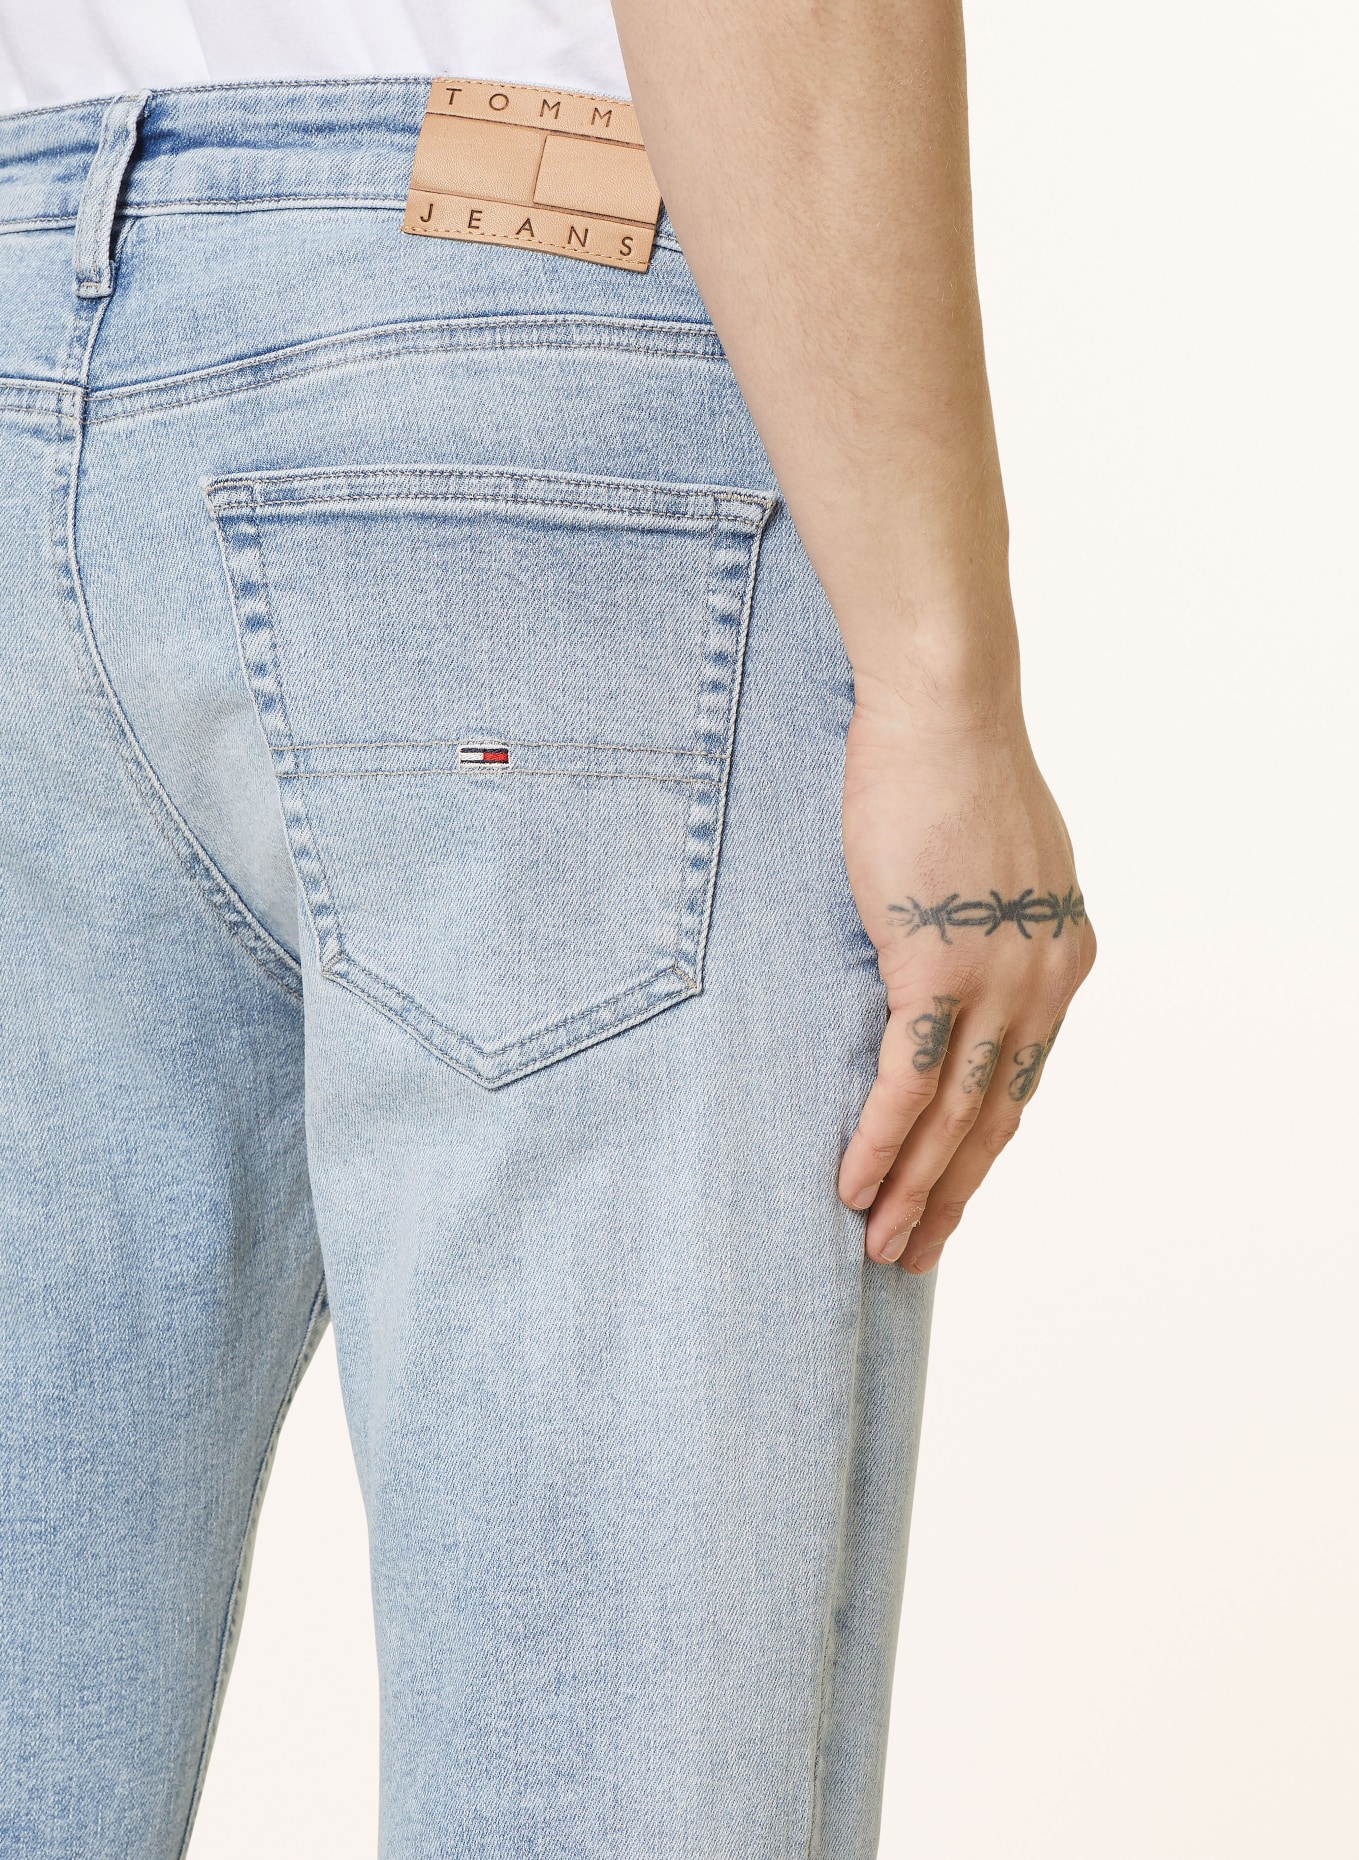 TOMMY JEANS Jeans AUSTIN slim tapered fit, Color: 1AB Denim Light (Image 6)